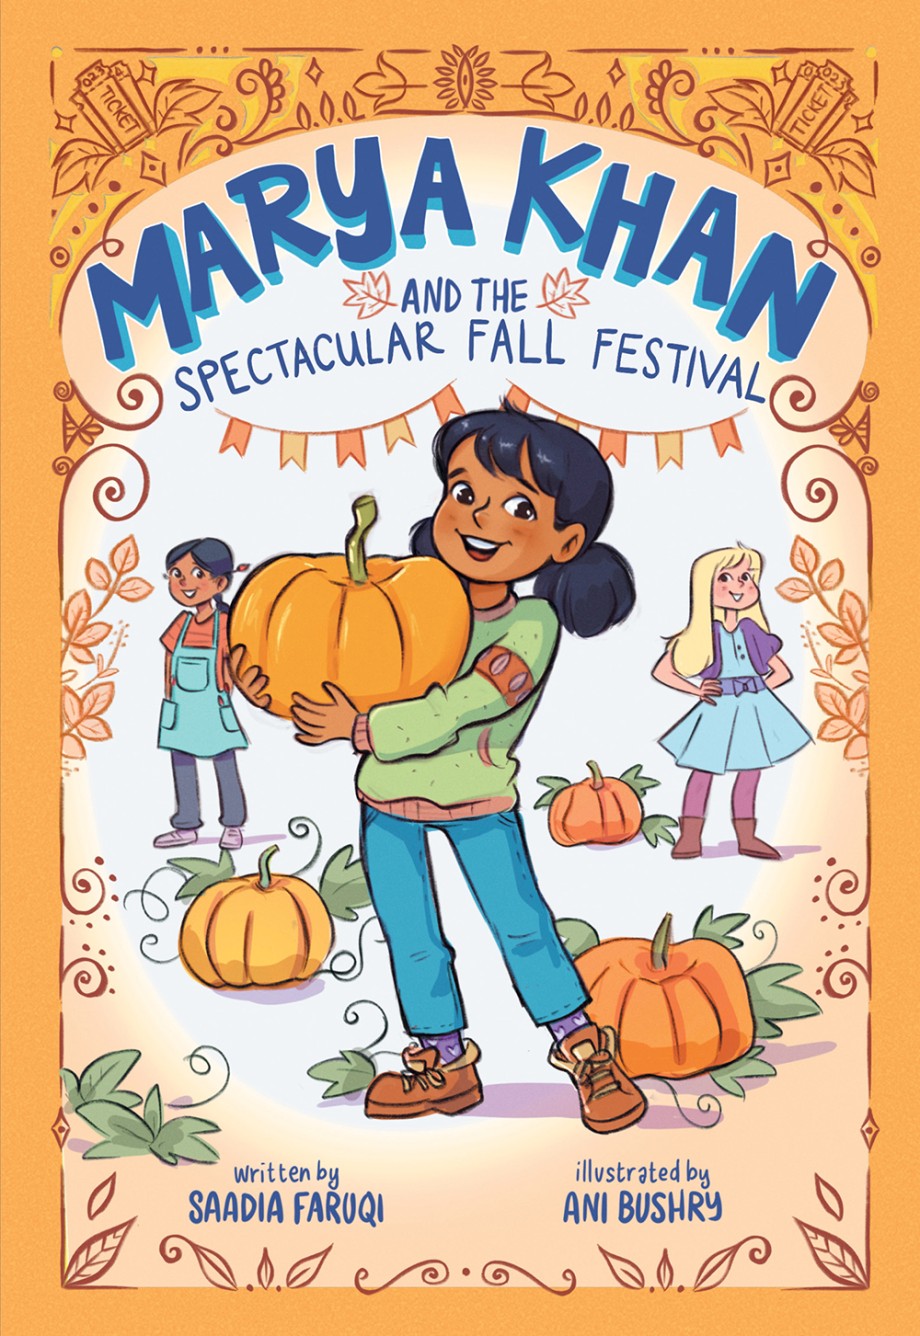 Marya Khan and the Spectacular Fall Festival (Marya Khan #3) 